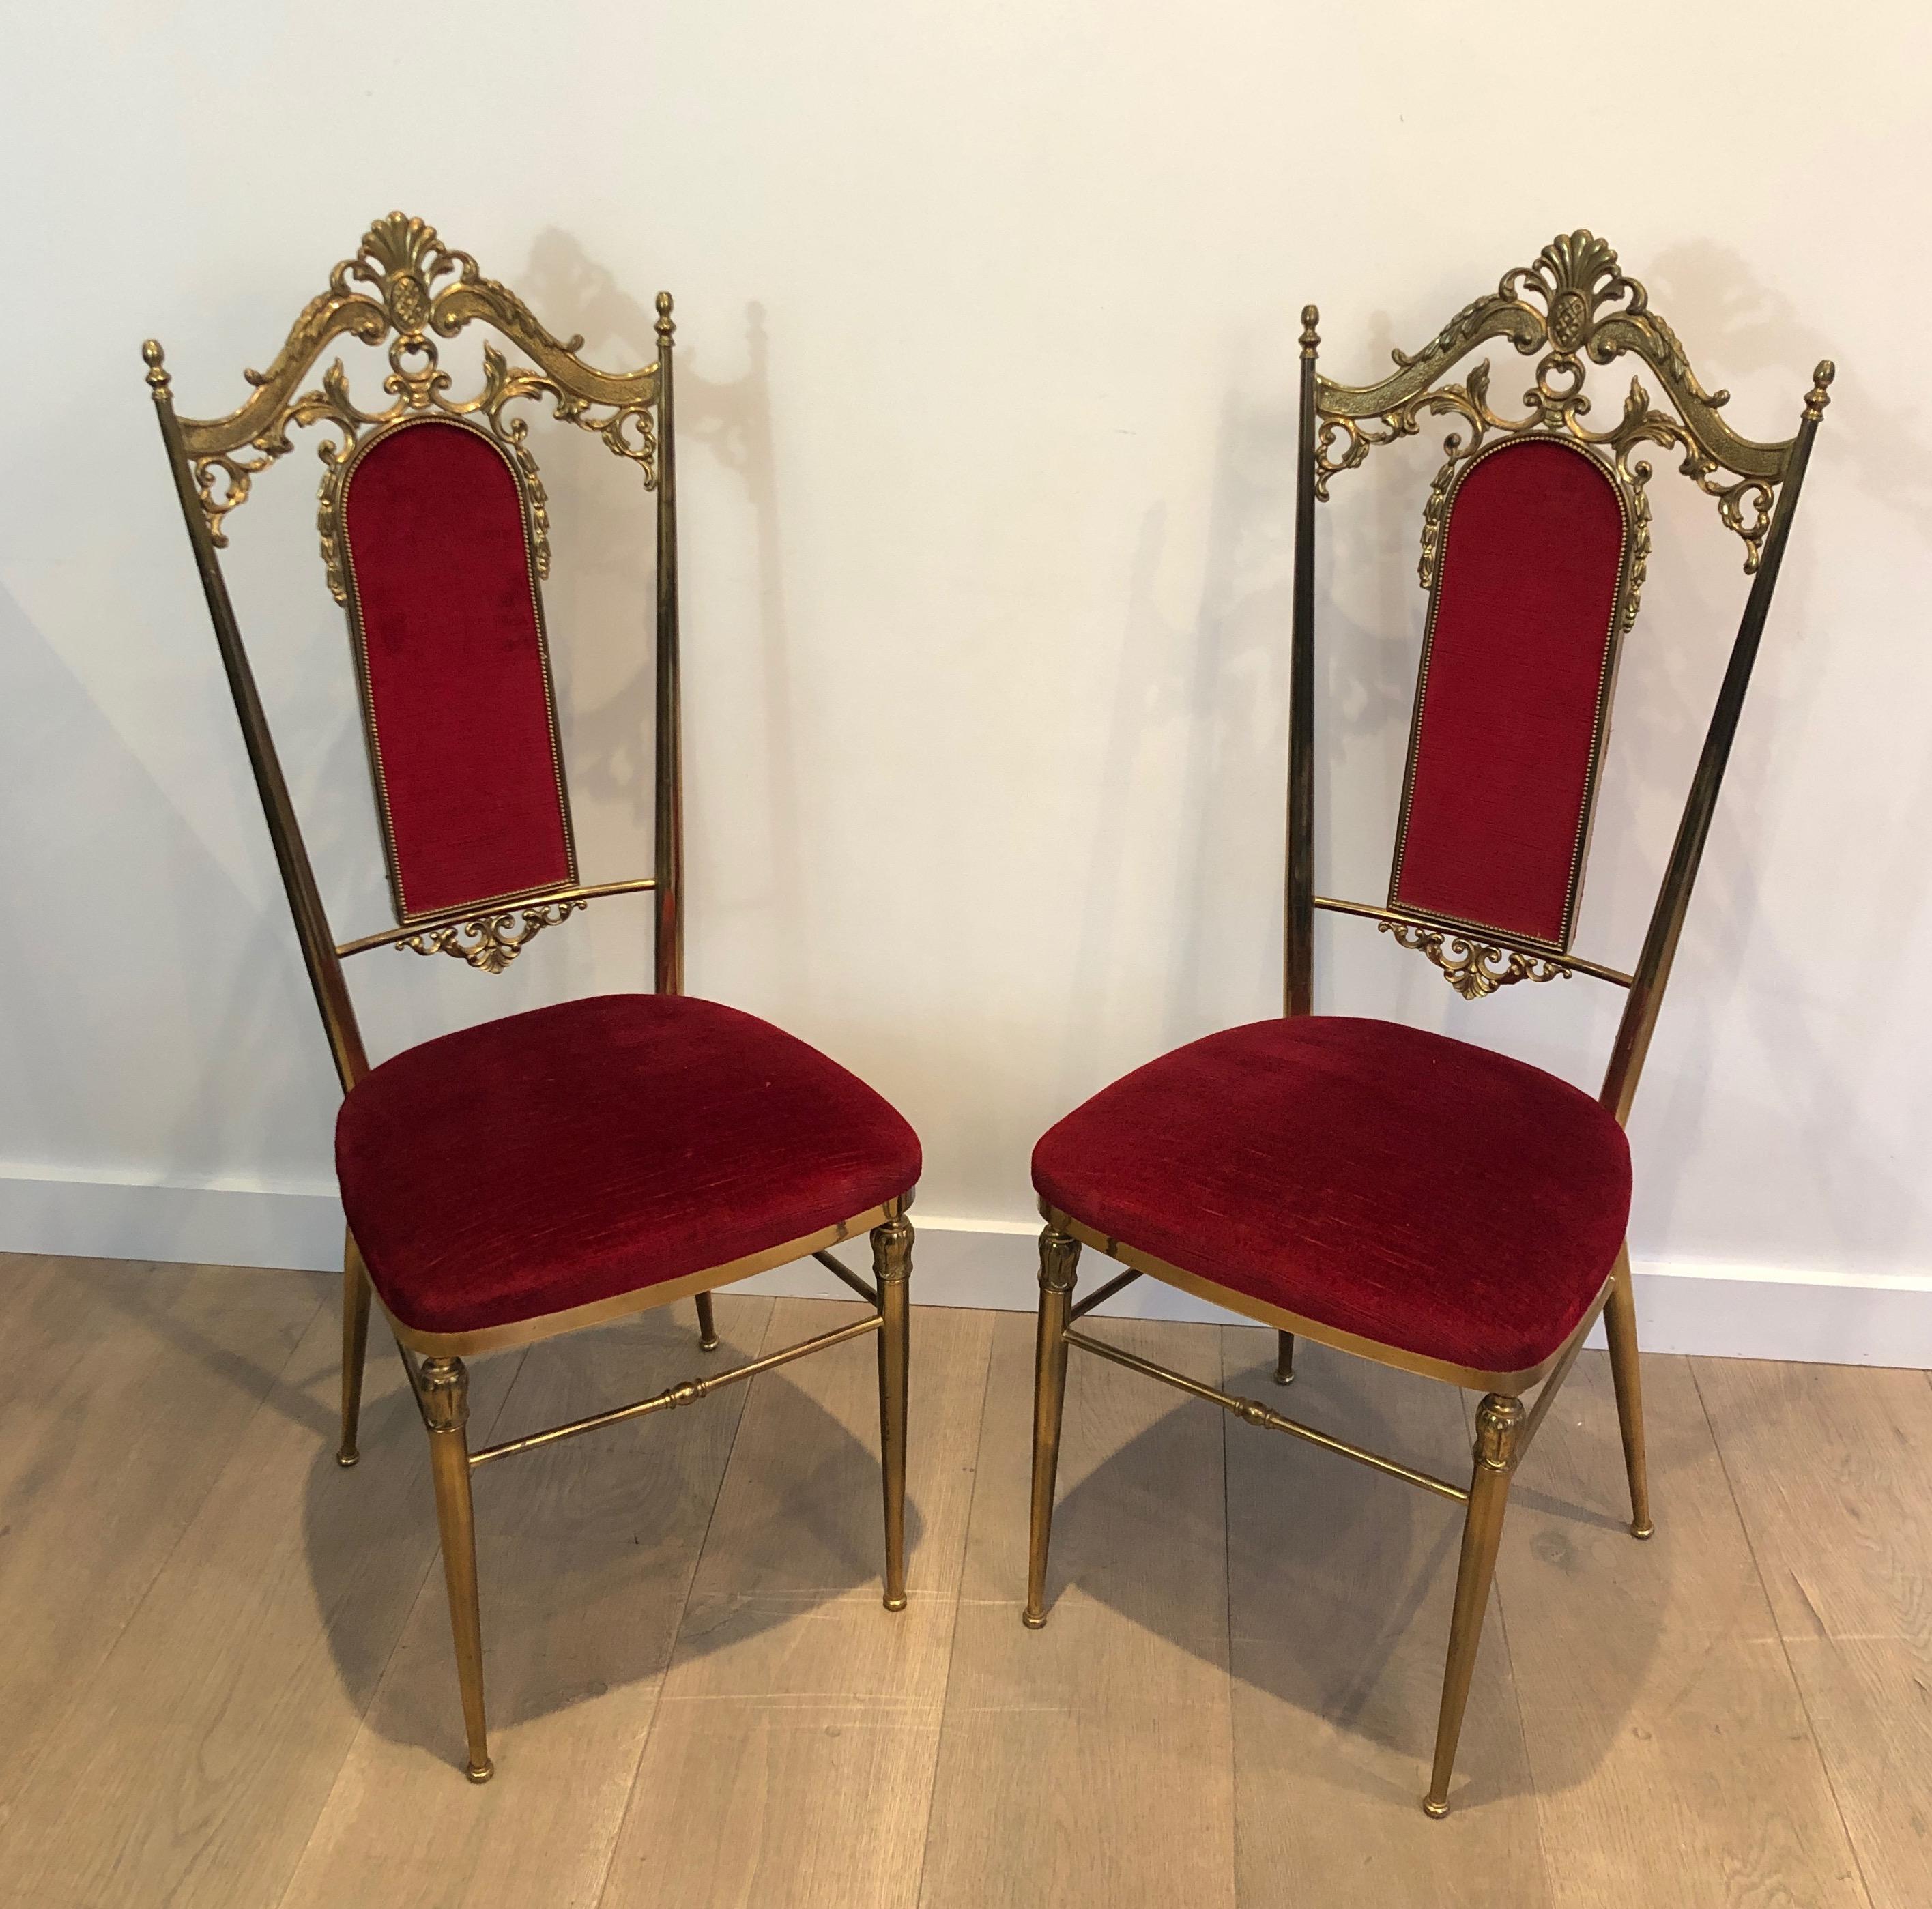 Dieses schöne und seltene Set von 4 Stühlen im neoklassischen Stil ist aus Messing und rotem Samt gefertigt. Es handelt sich um ein französisches Werk im Stil des berühmten Designers Maison Jansen. Ca. 1940.